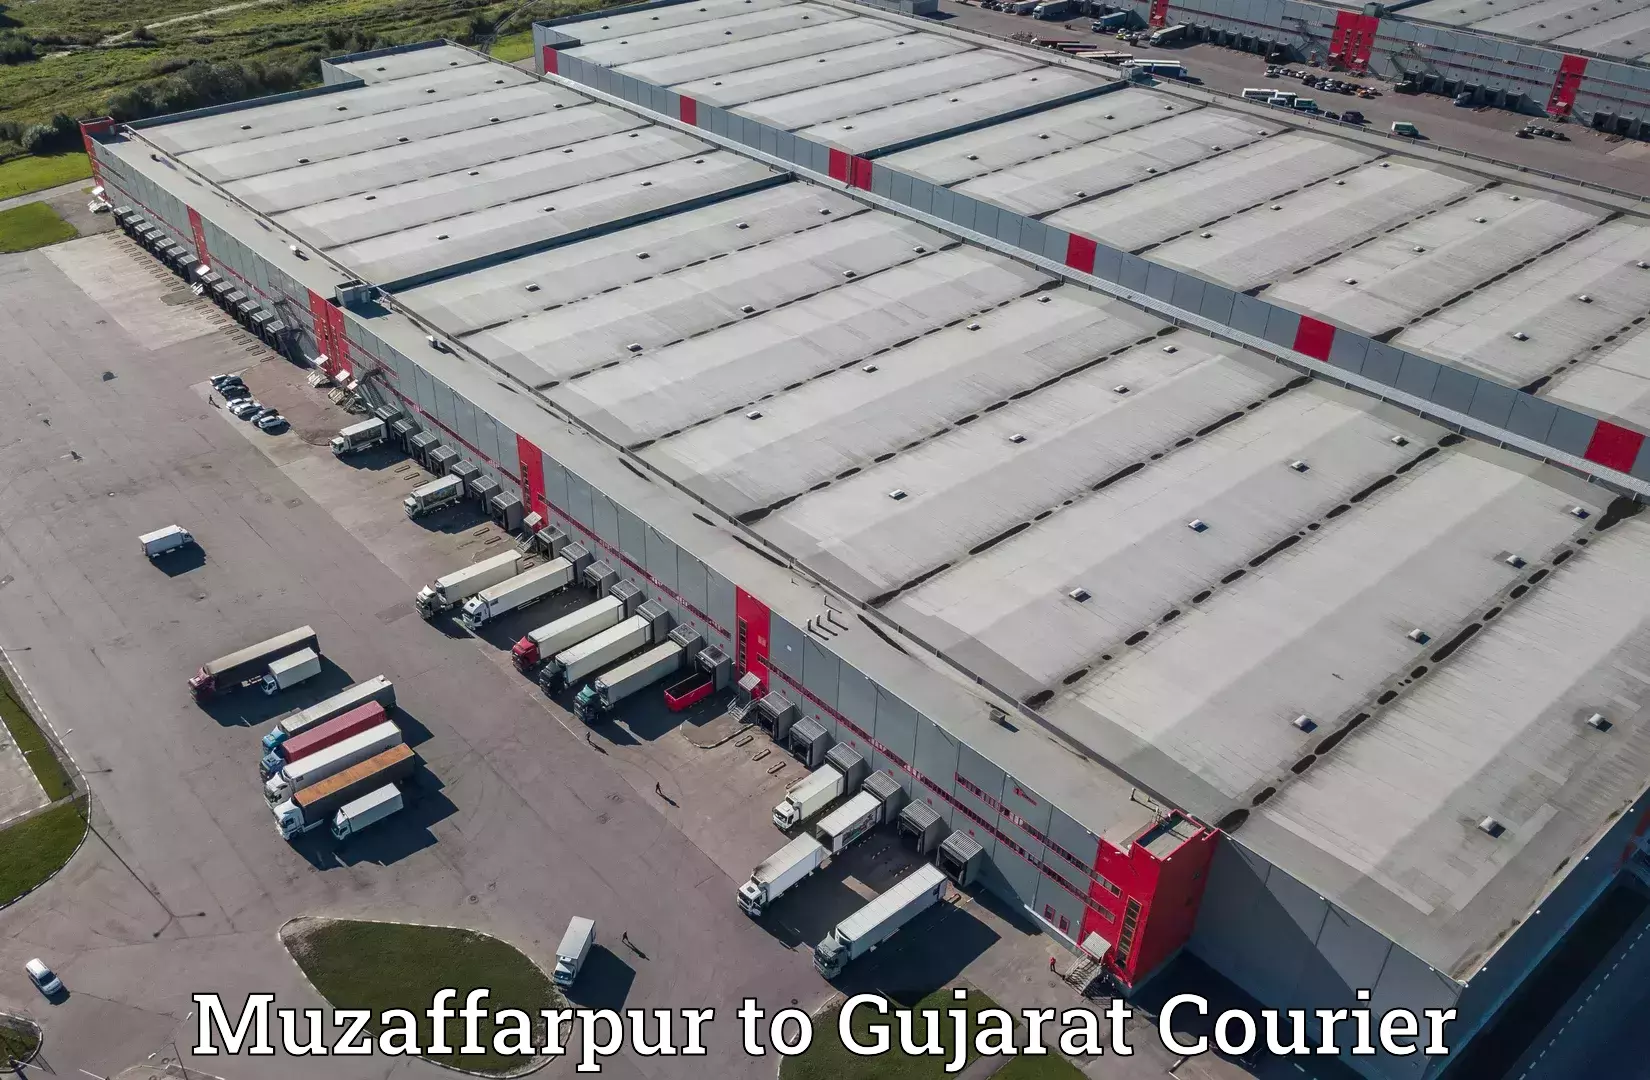 Premium courier solutions Muzaffarpur to Rapar